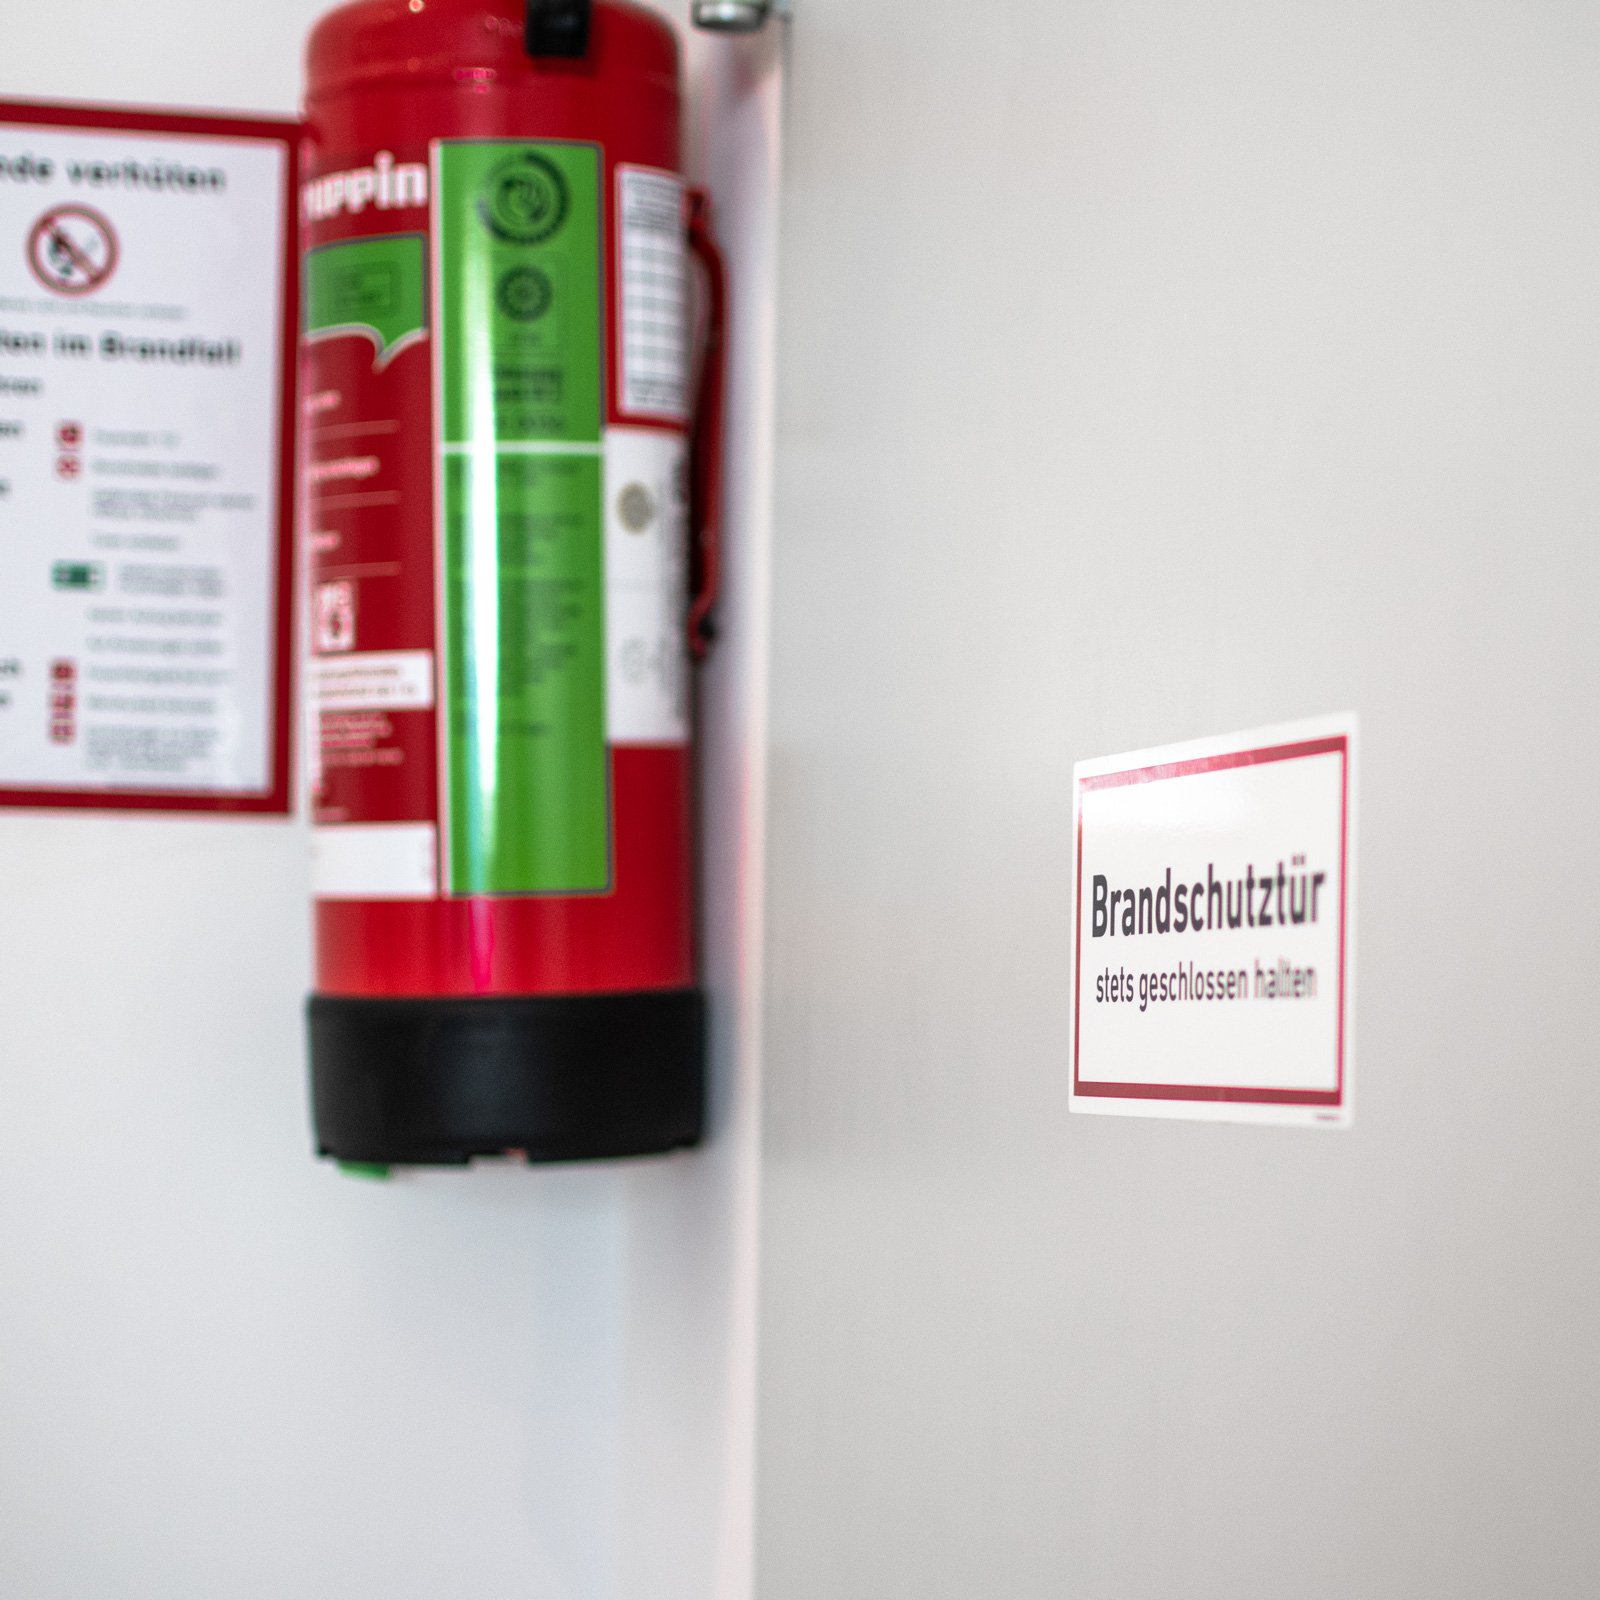 Brandschutztür stets geschlossen halten Aufkleber Schild Hinweis Tür Sticker